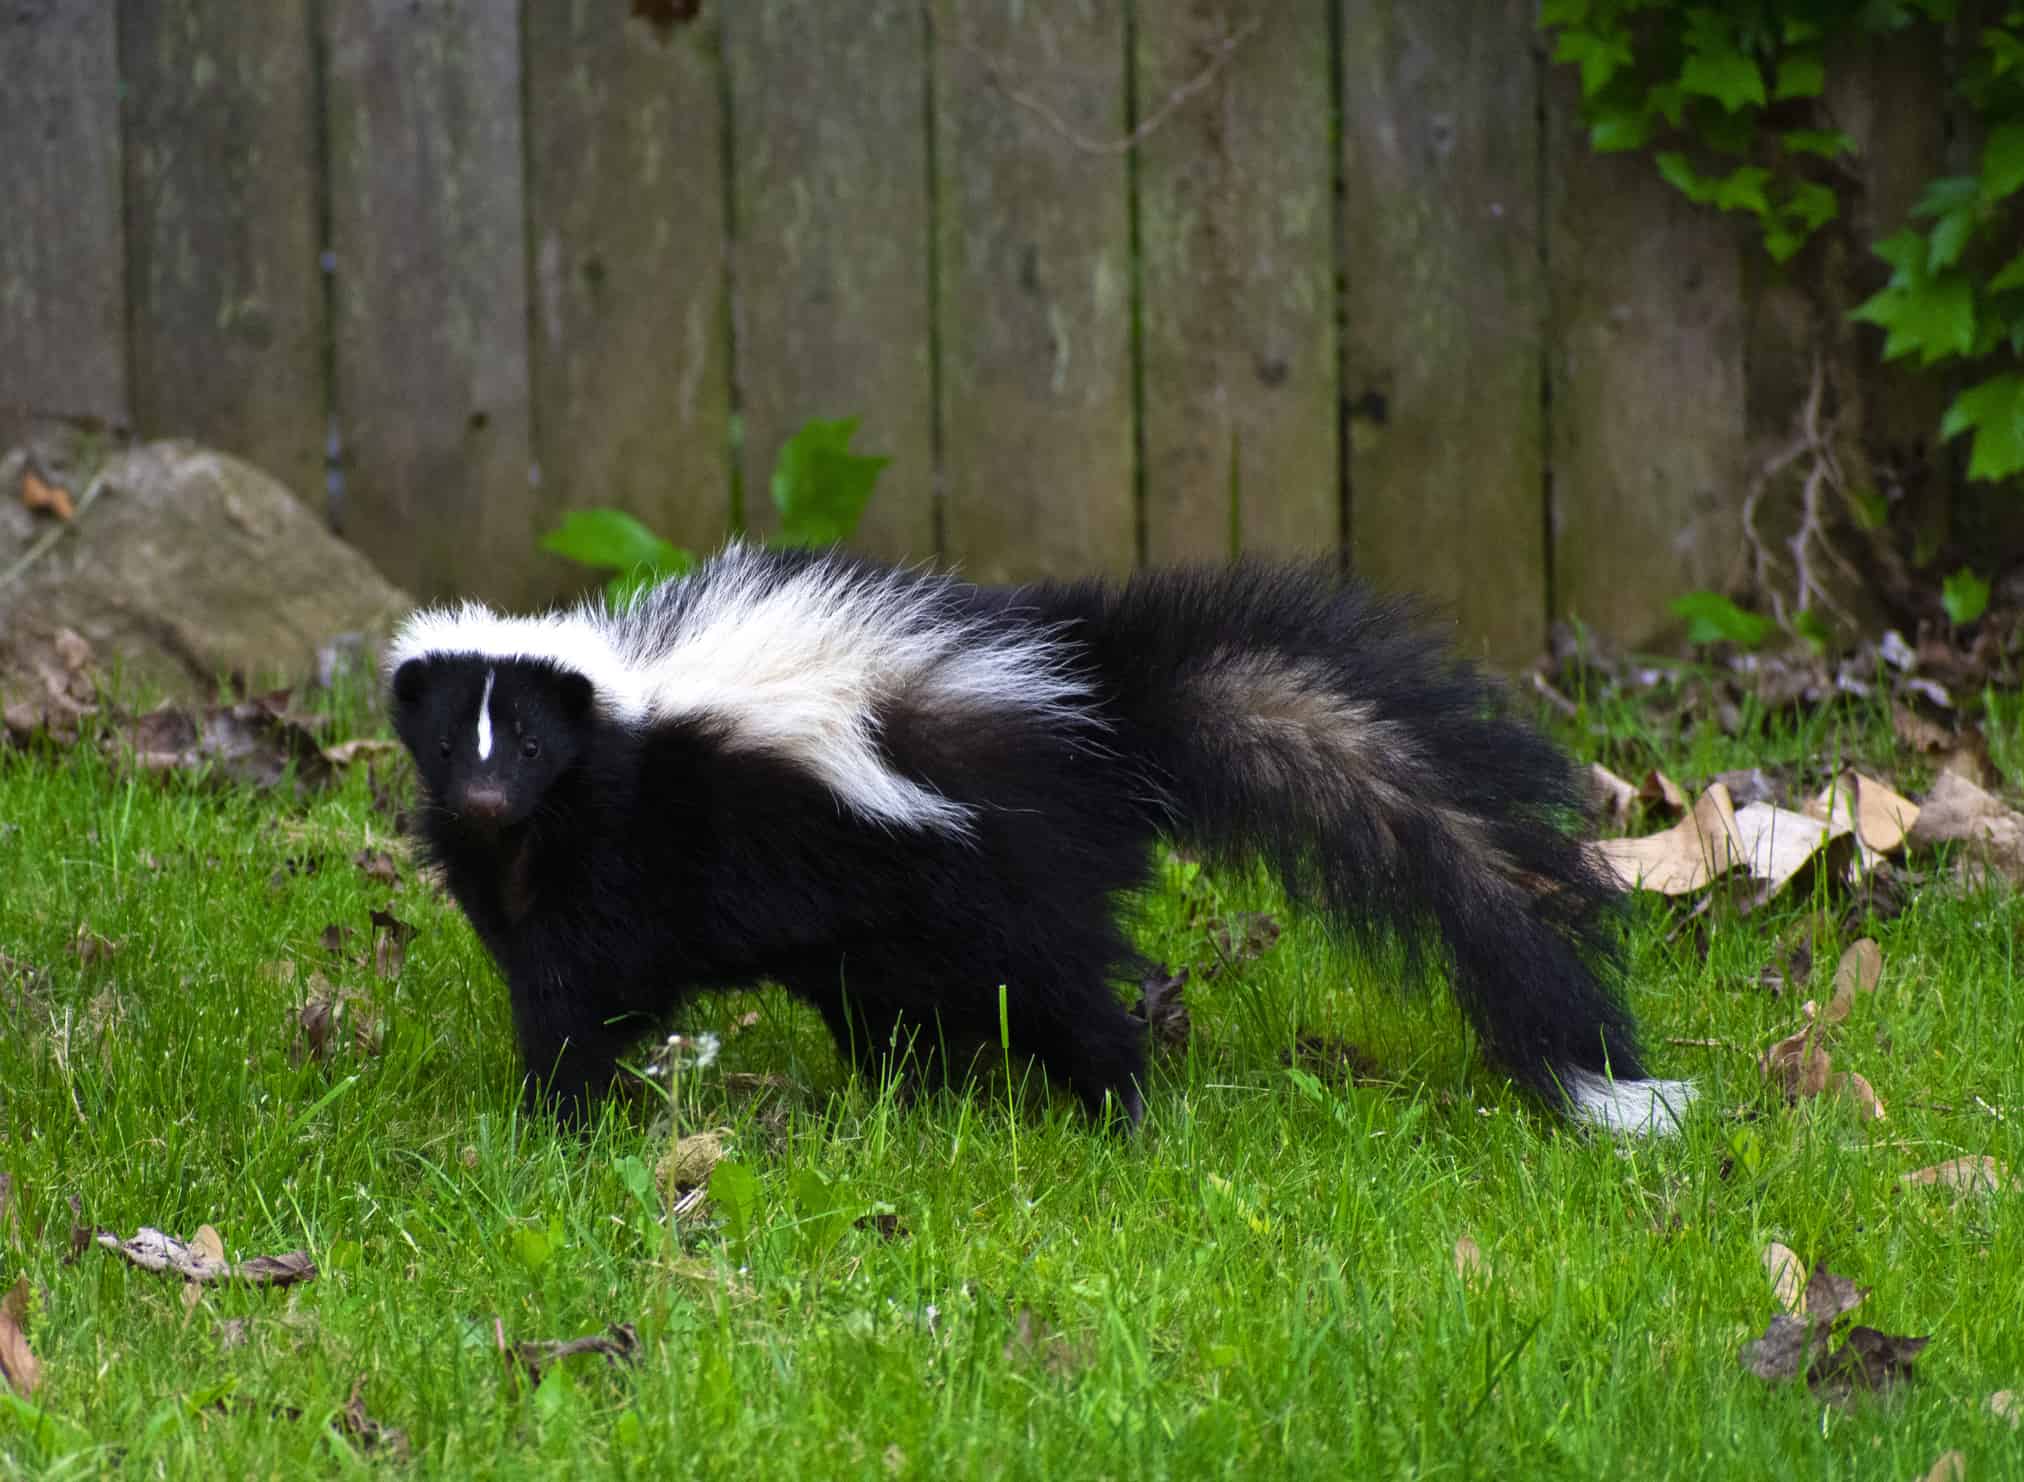 Cute Skunk in a Backyard